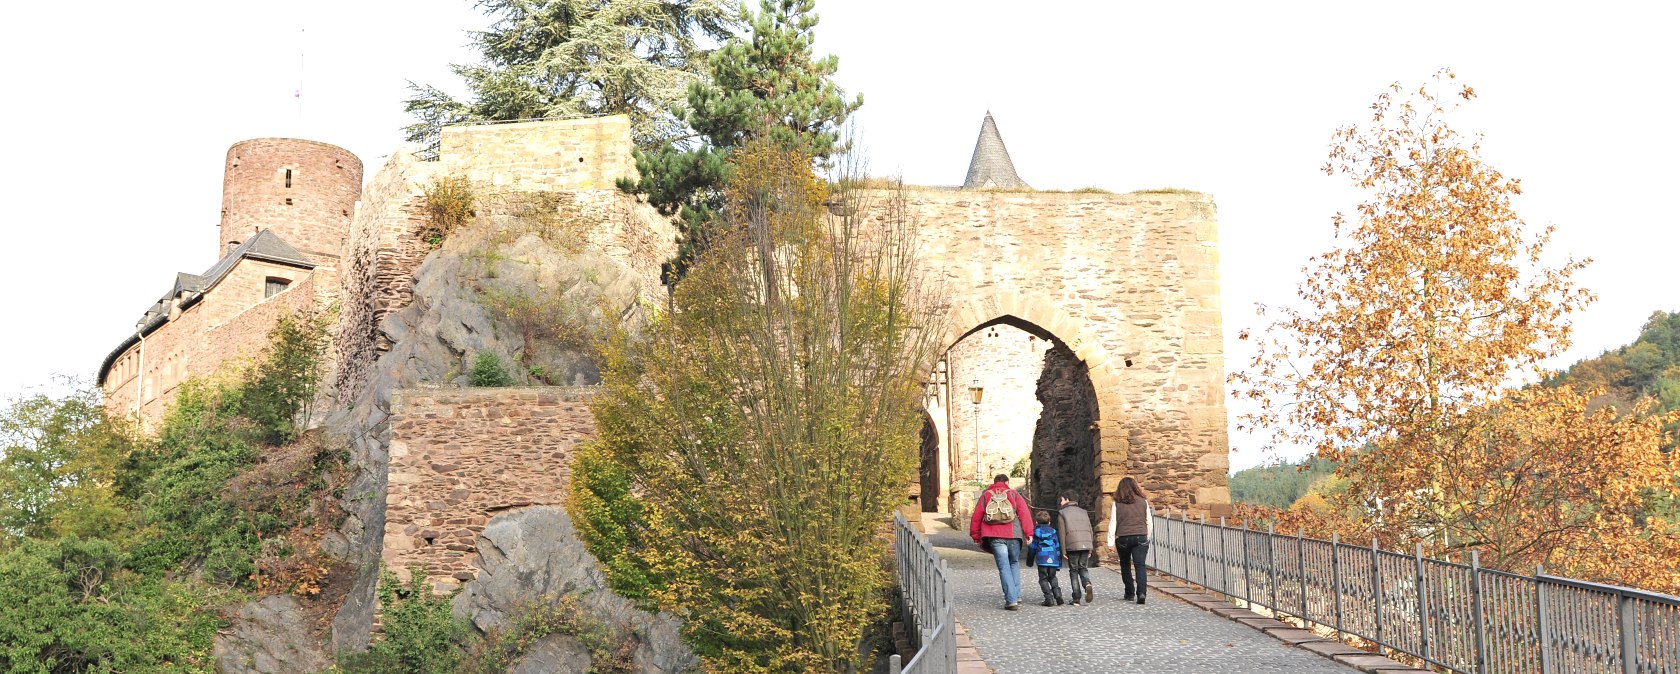 Die Burg Hengebach ist nur eine von unseren Sehenswürdigkeiten